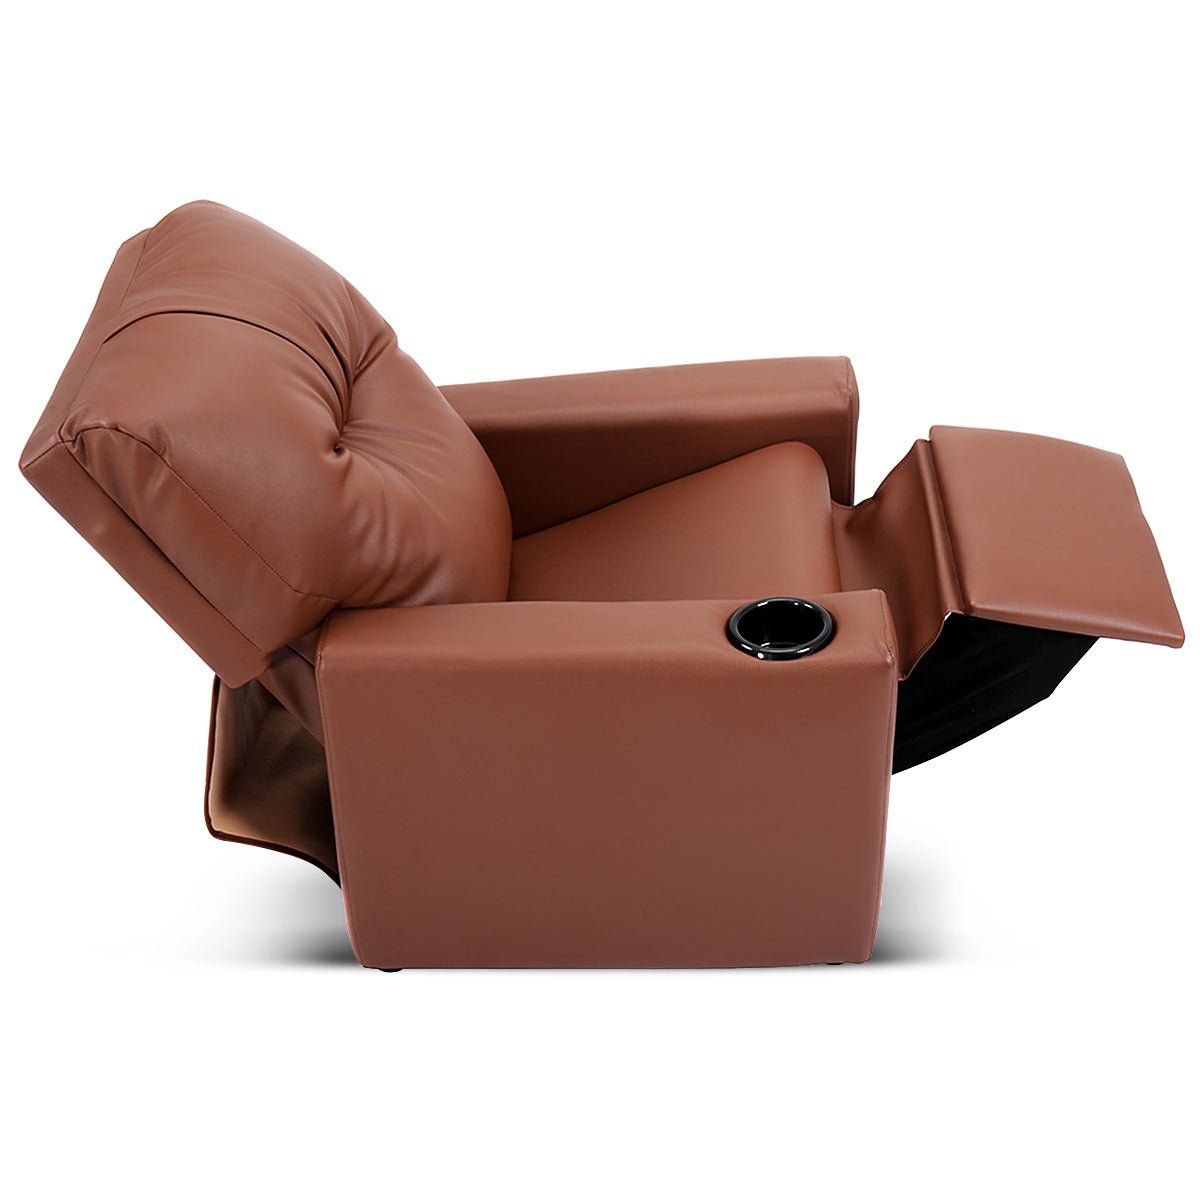 Adjustable Kids Lounge Chair: High Backrest and Armrest - Deep Brown